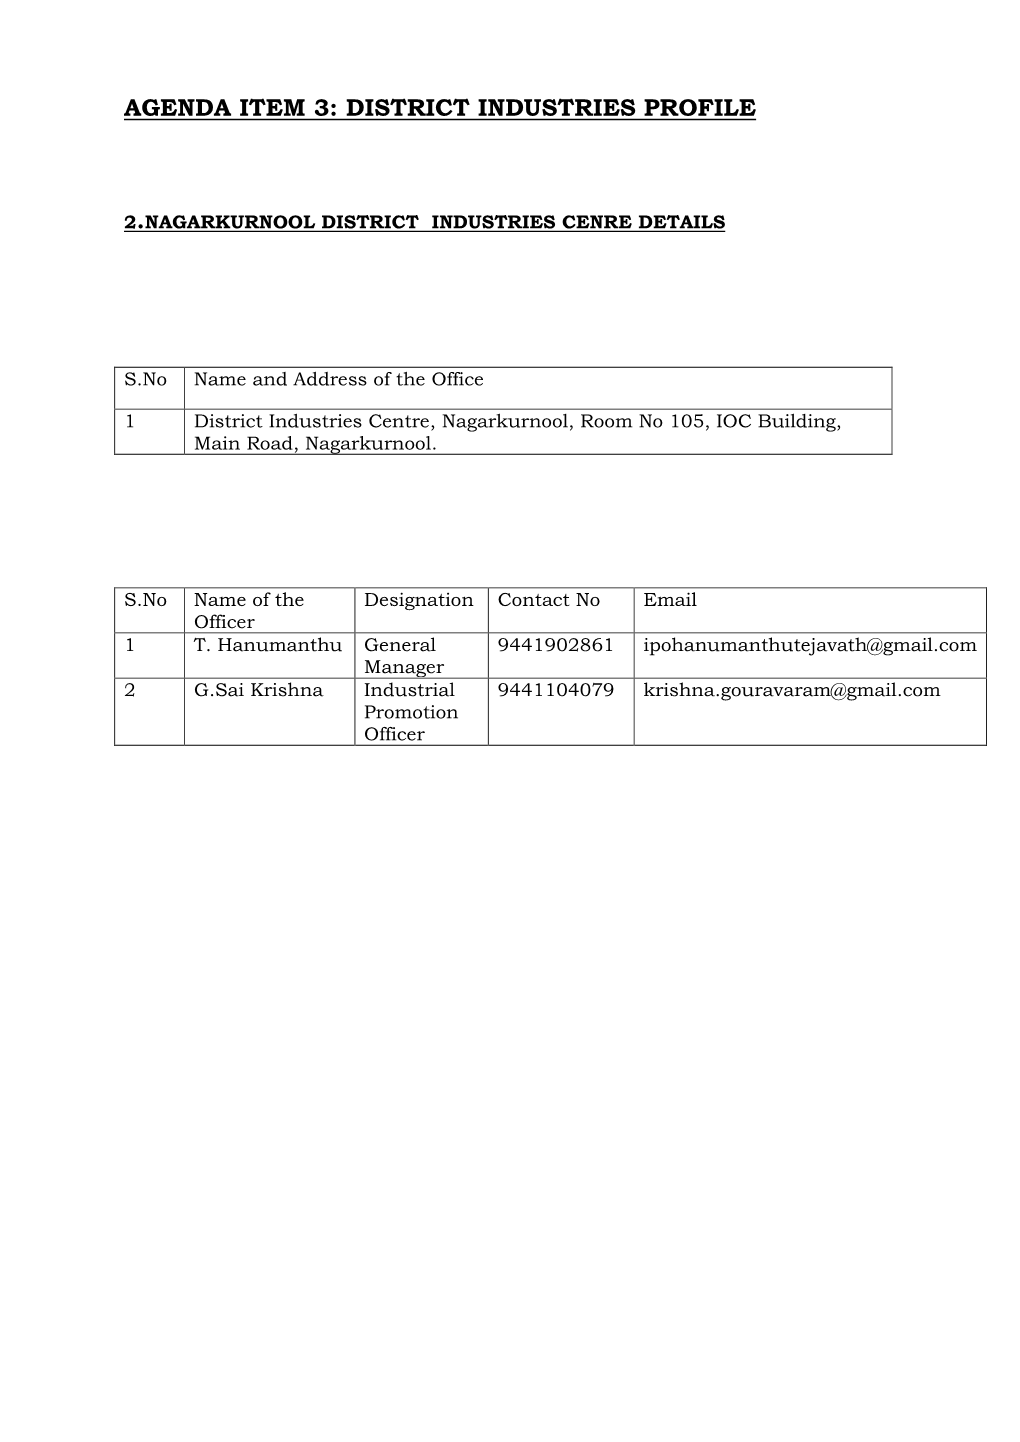 Agenda Item 3: District Industries Profile